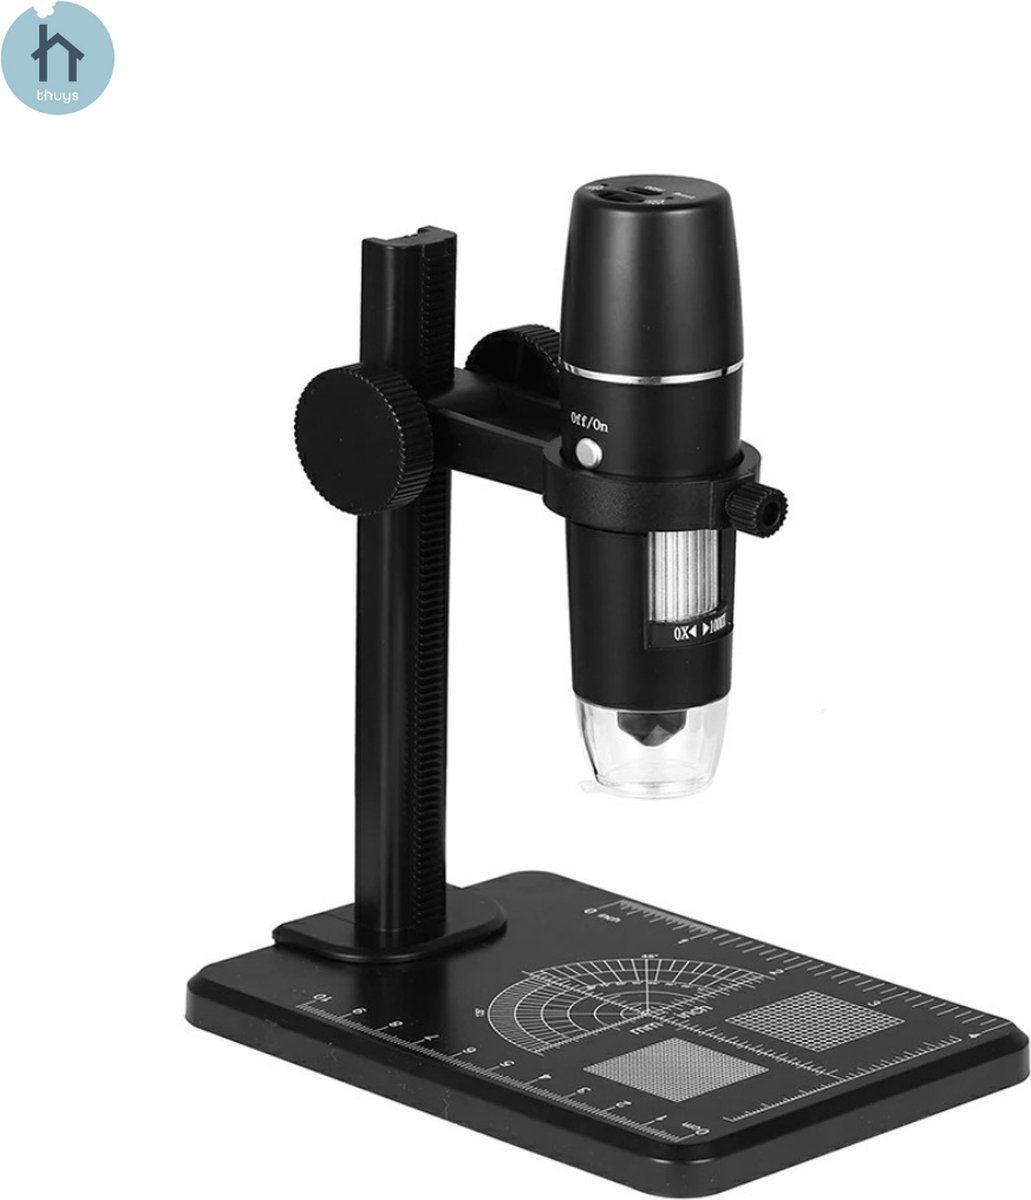 Thuys Microscoop - Microscoop Voor Kinderen - Microscoop Digitaal - Telefoon Verbinding - Draadloos - 1000x Zoom - Videoverbinding